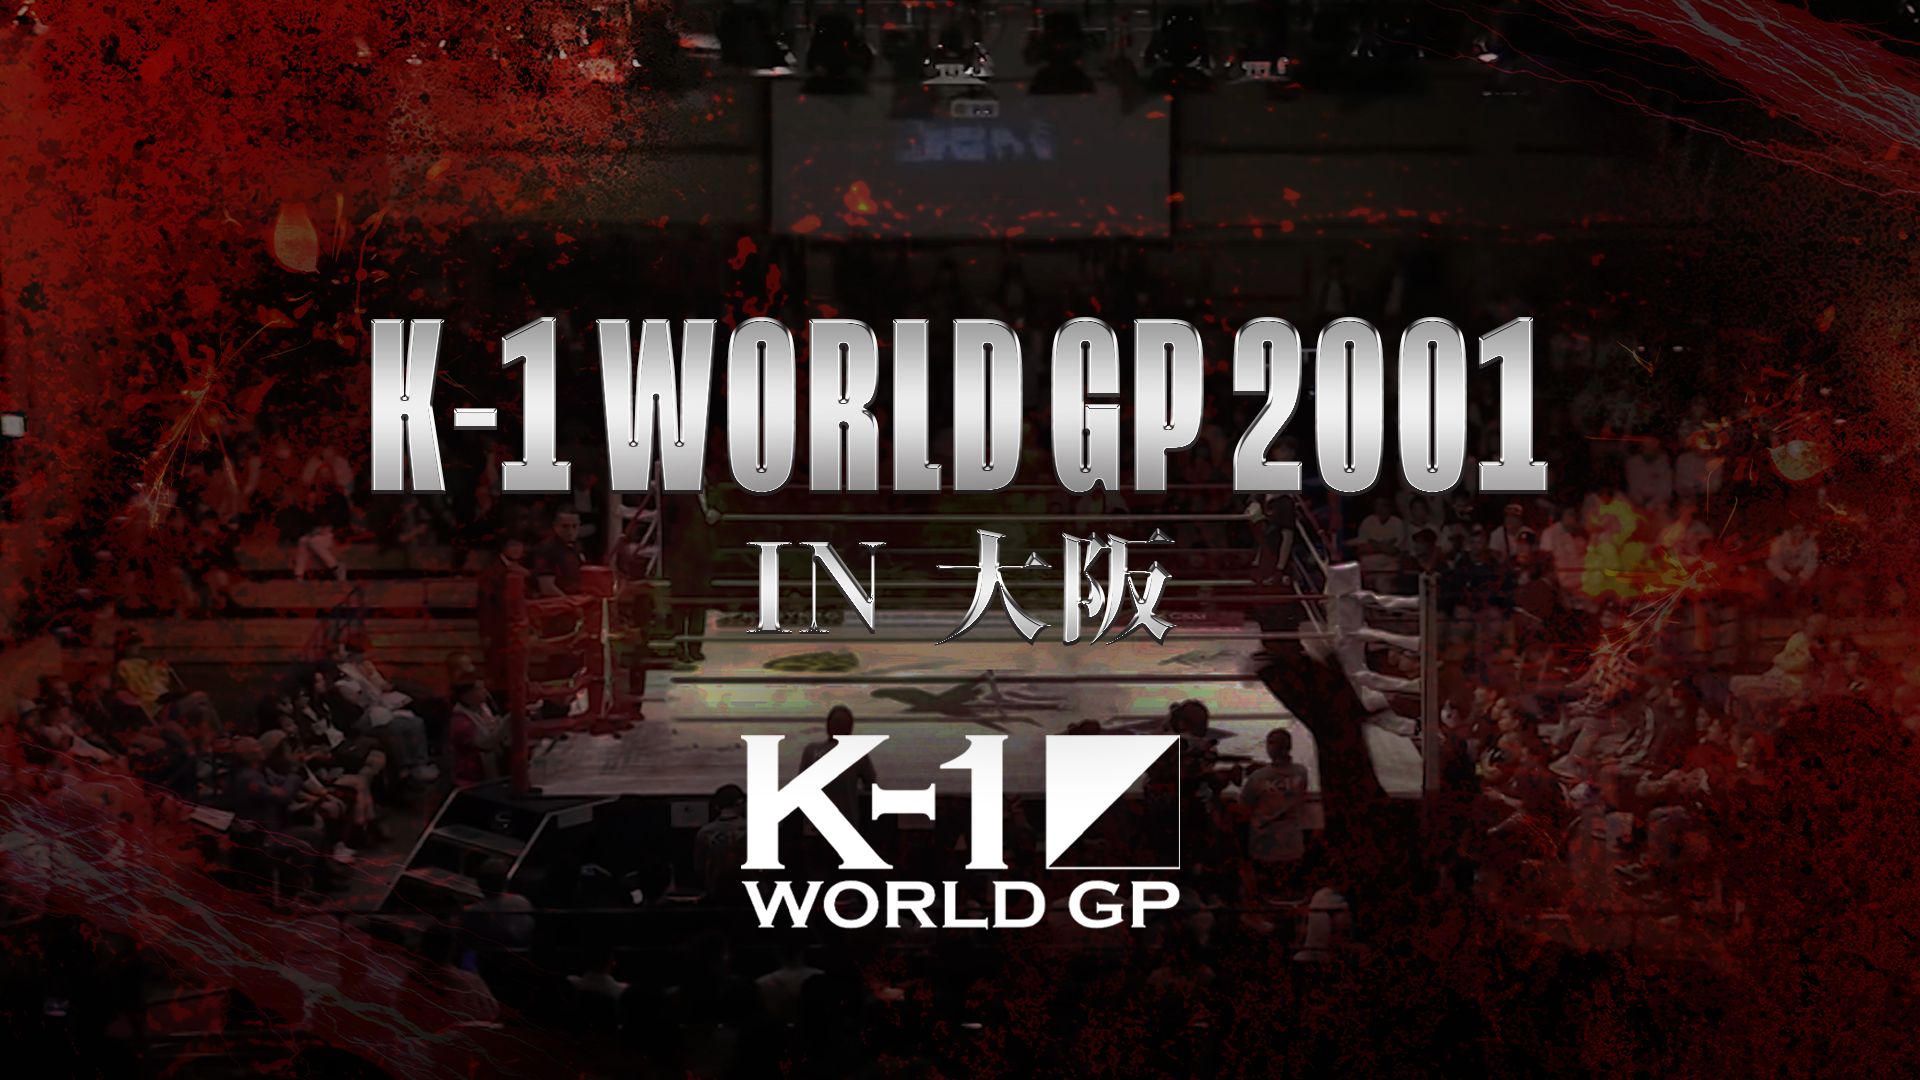 K-1 WORLD GP 2001 in 大阪